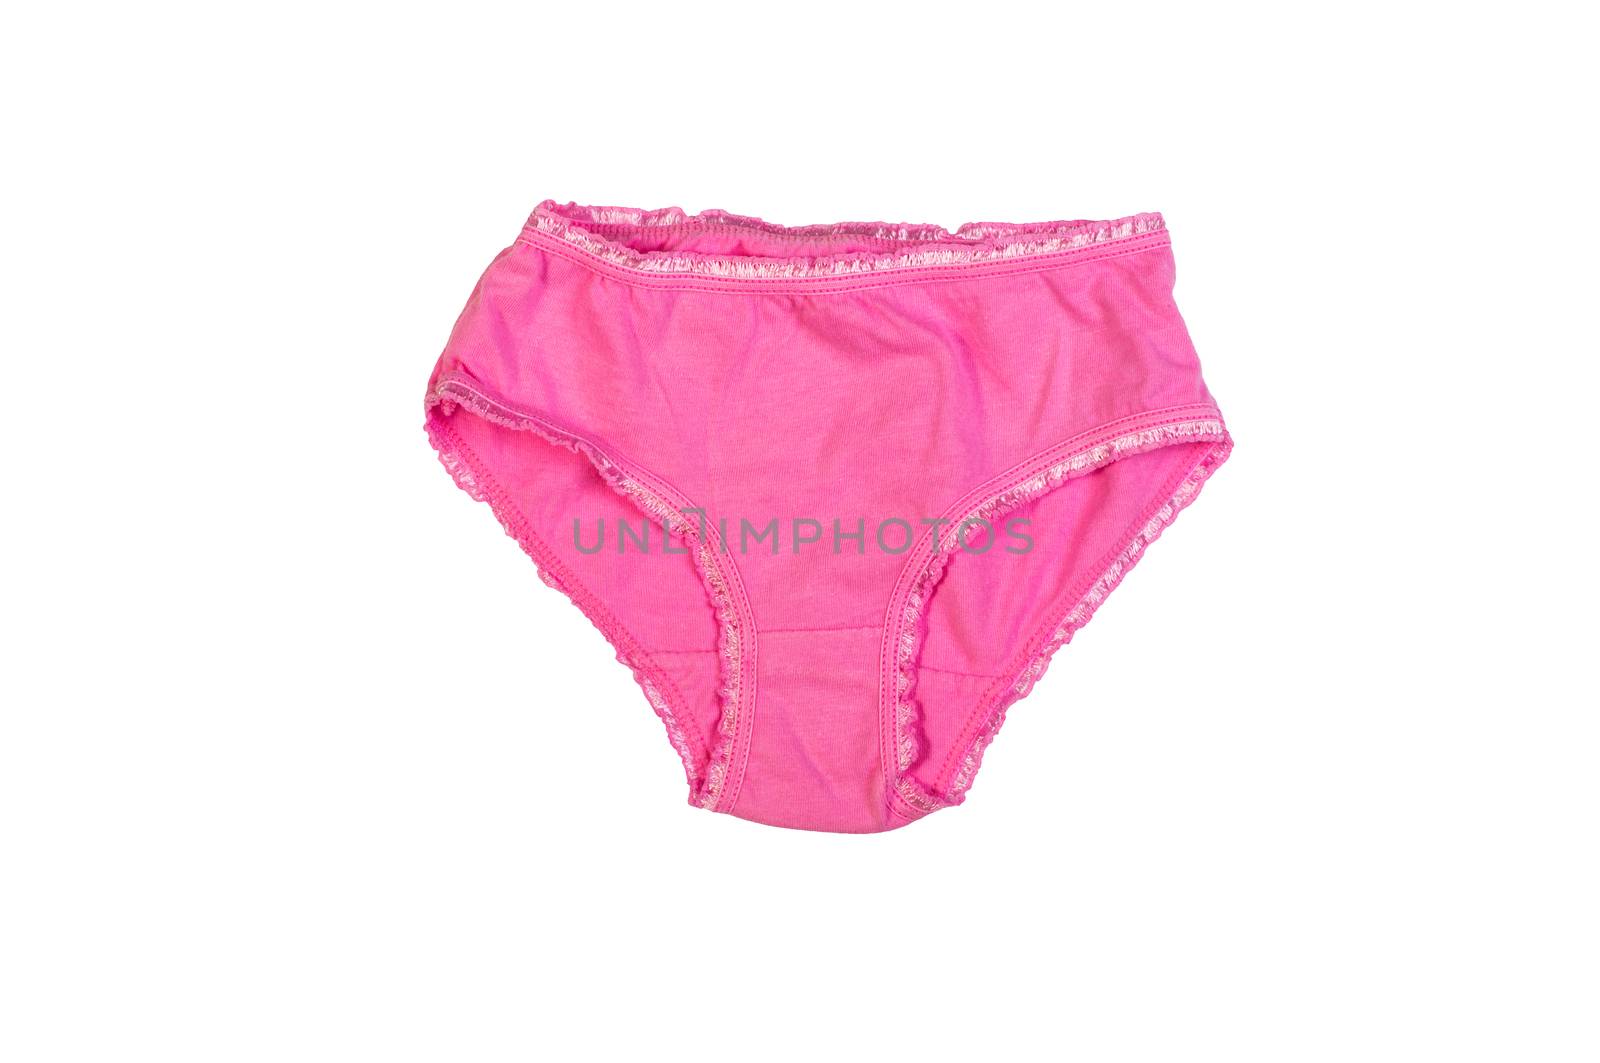 children's pink panties  by iprachenko